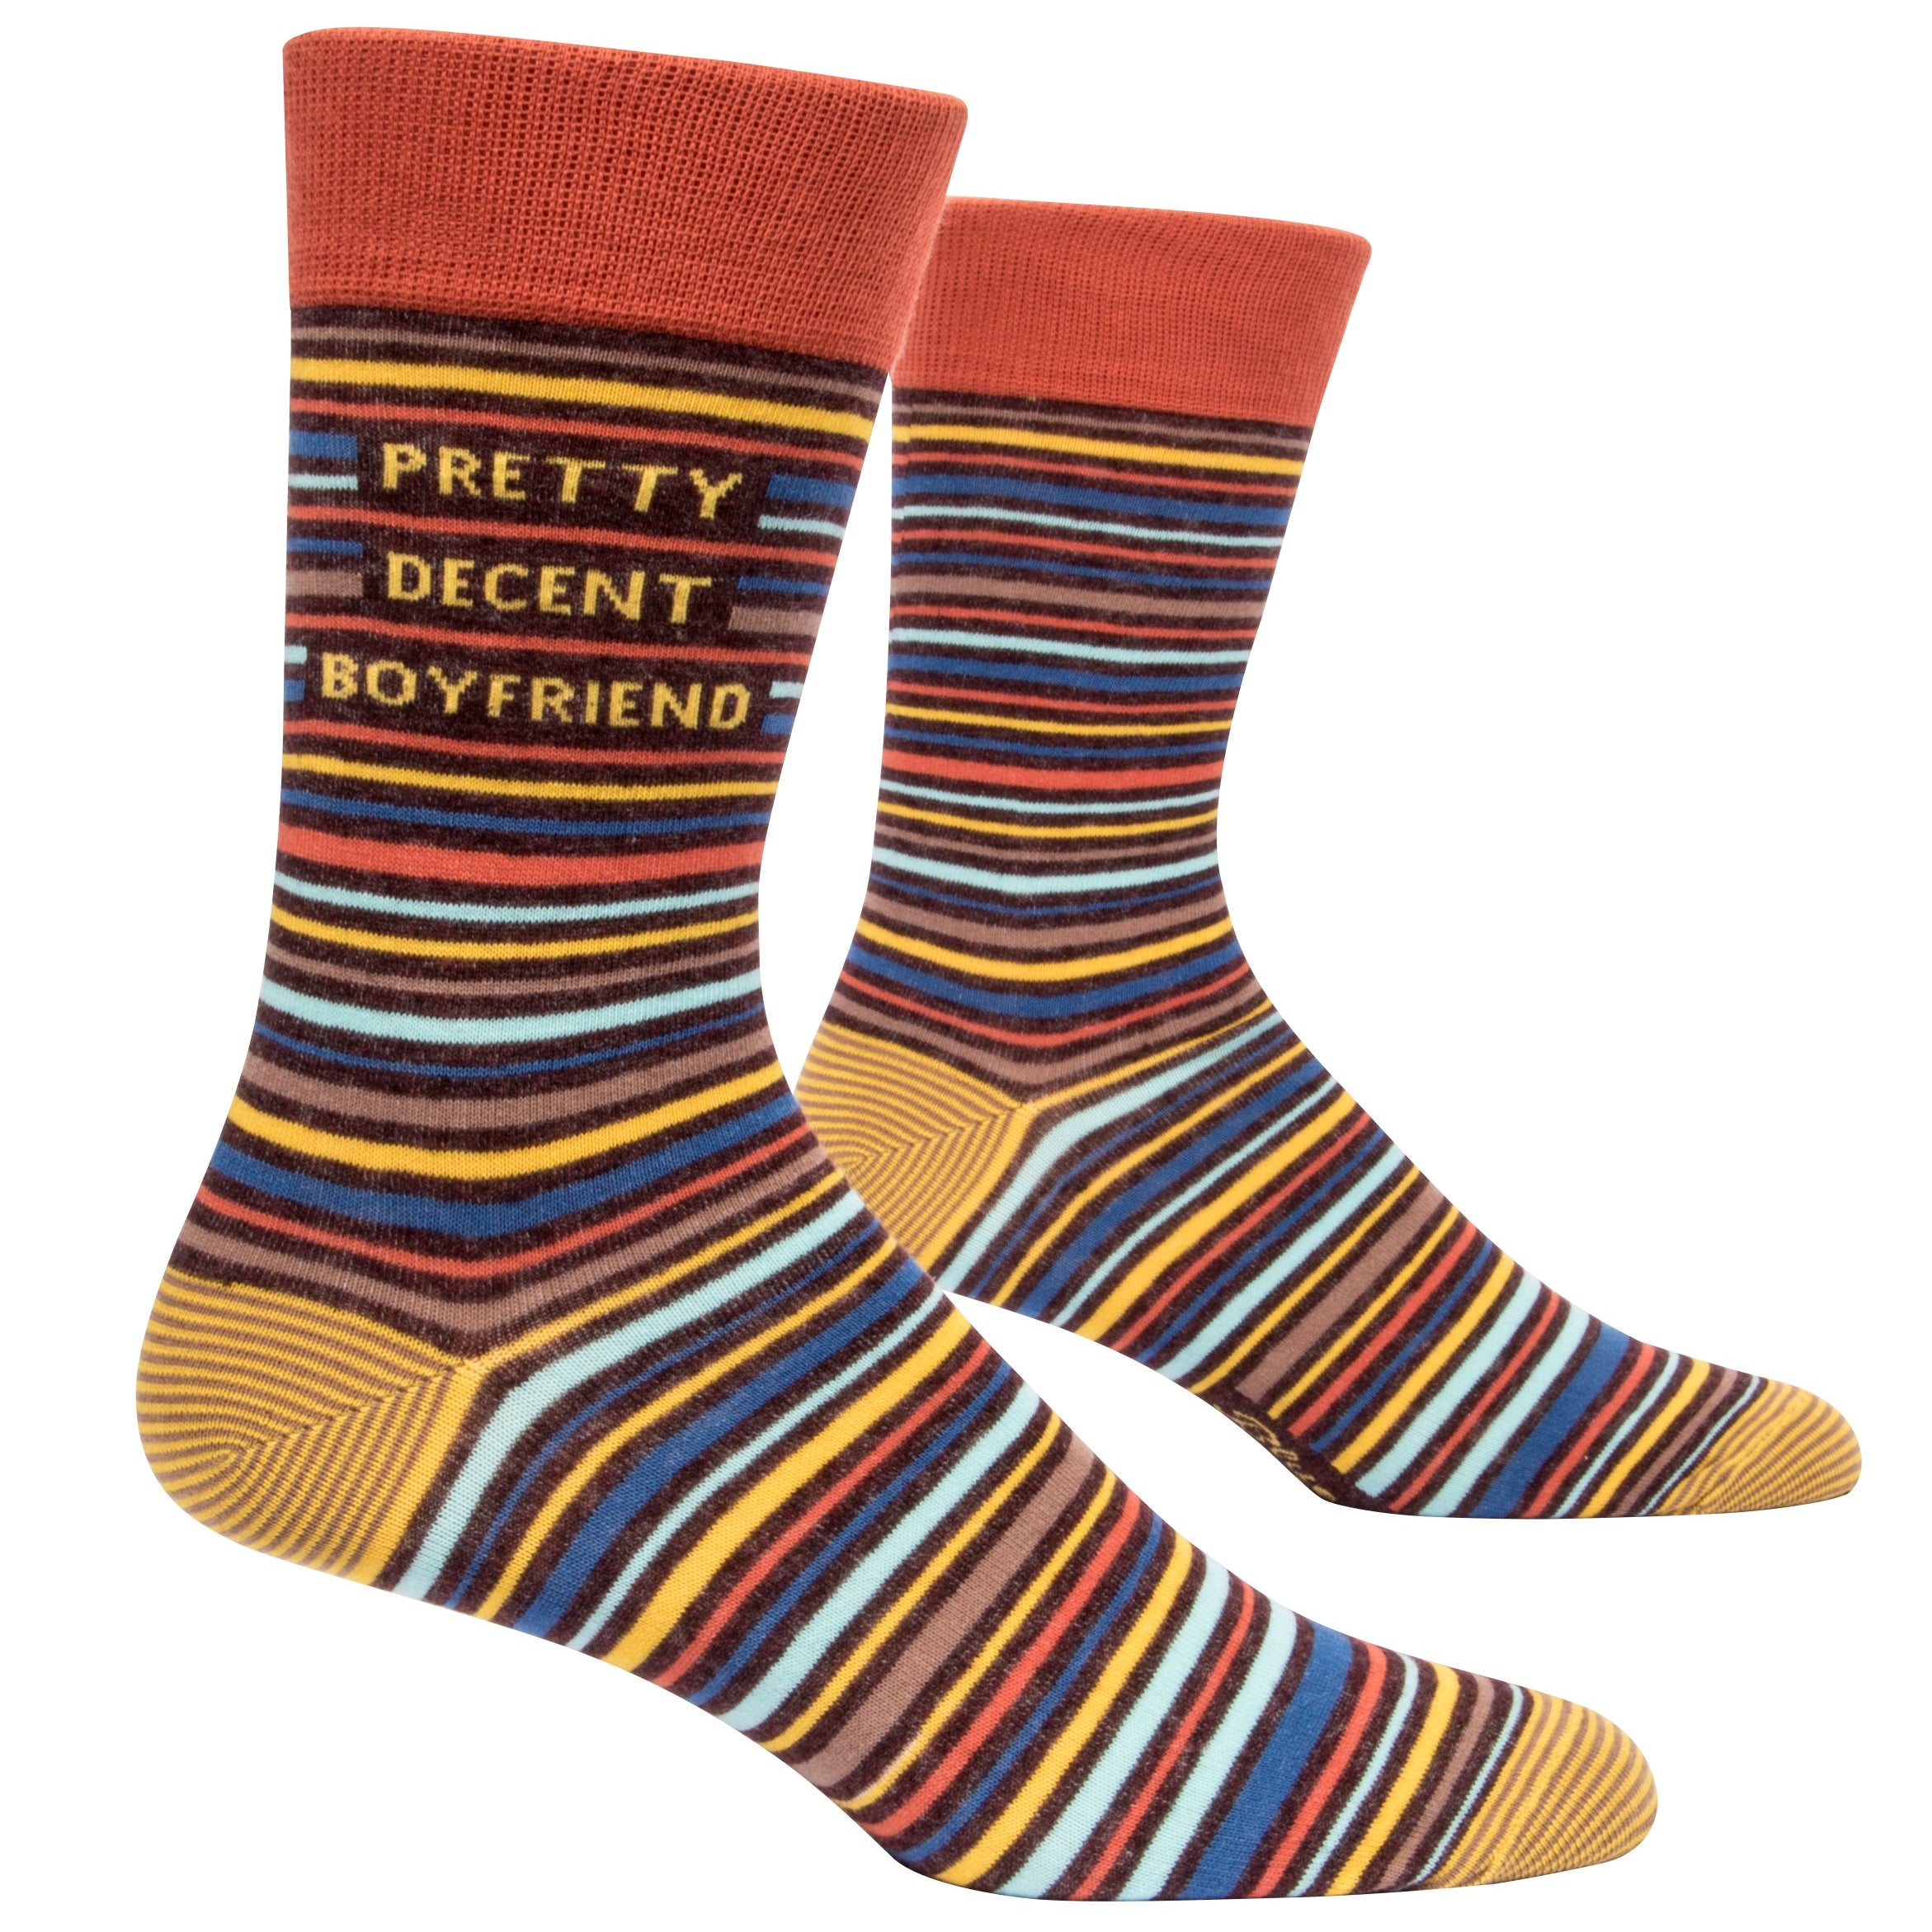 socks with warm multicolour mini stripes and says pretty decent boyfriend